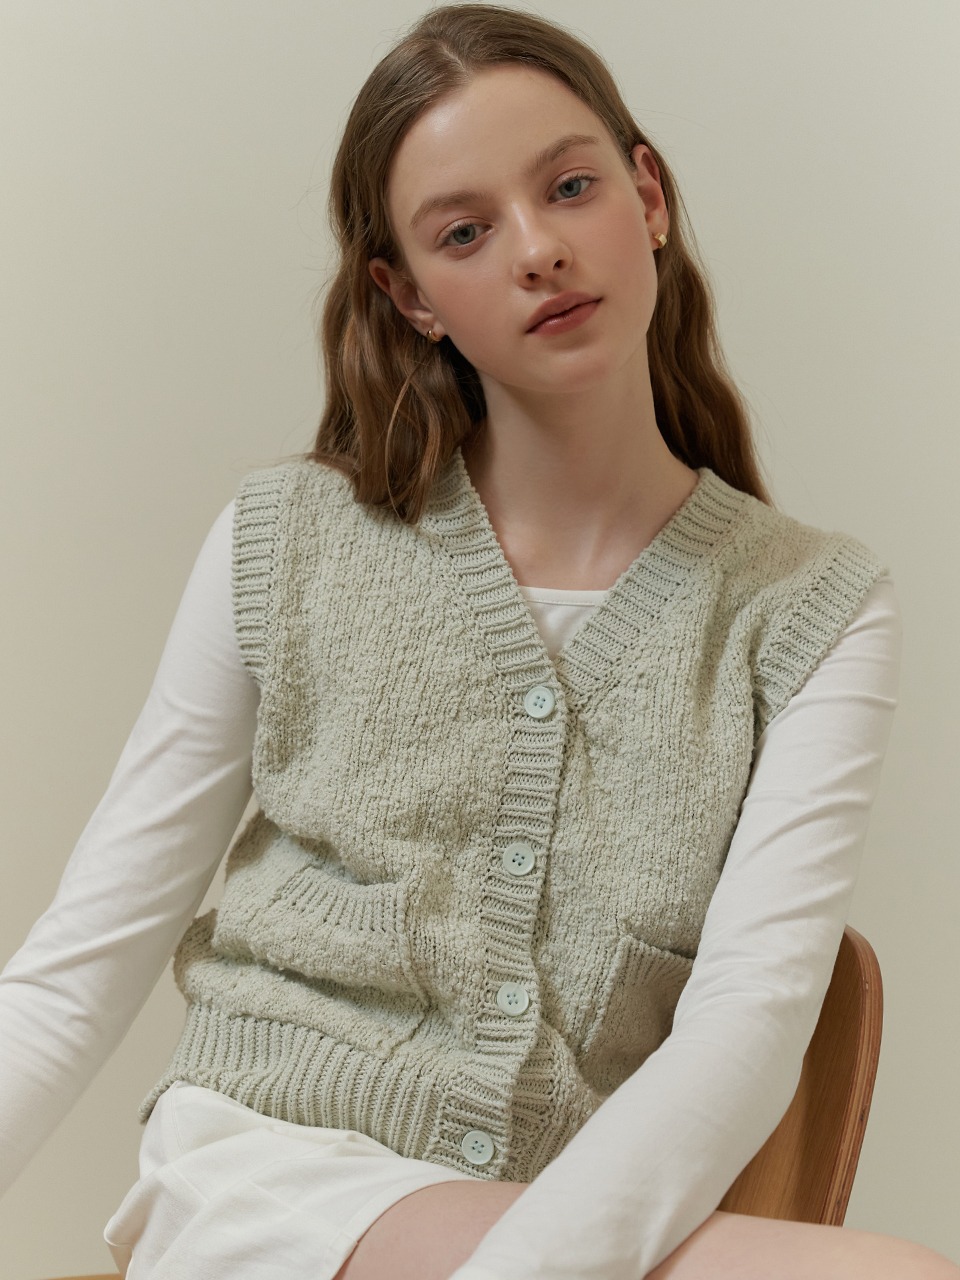 Candy floss knit vest (olive)